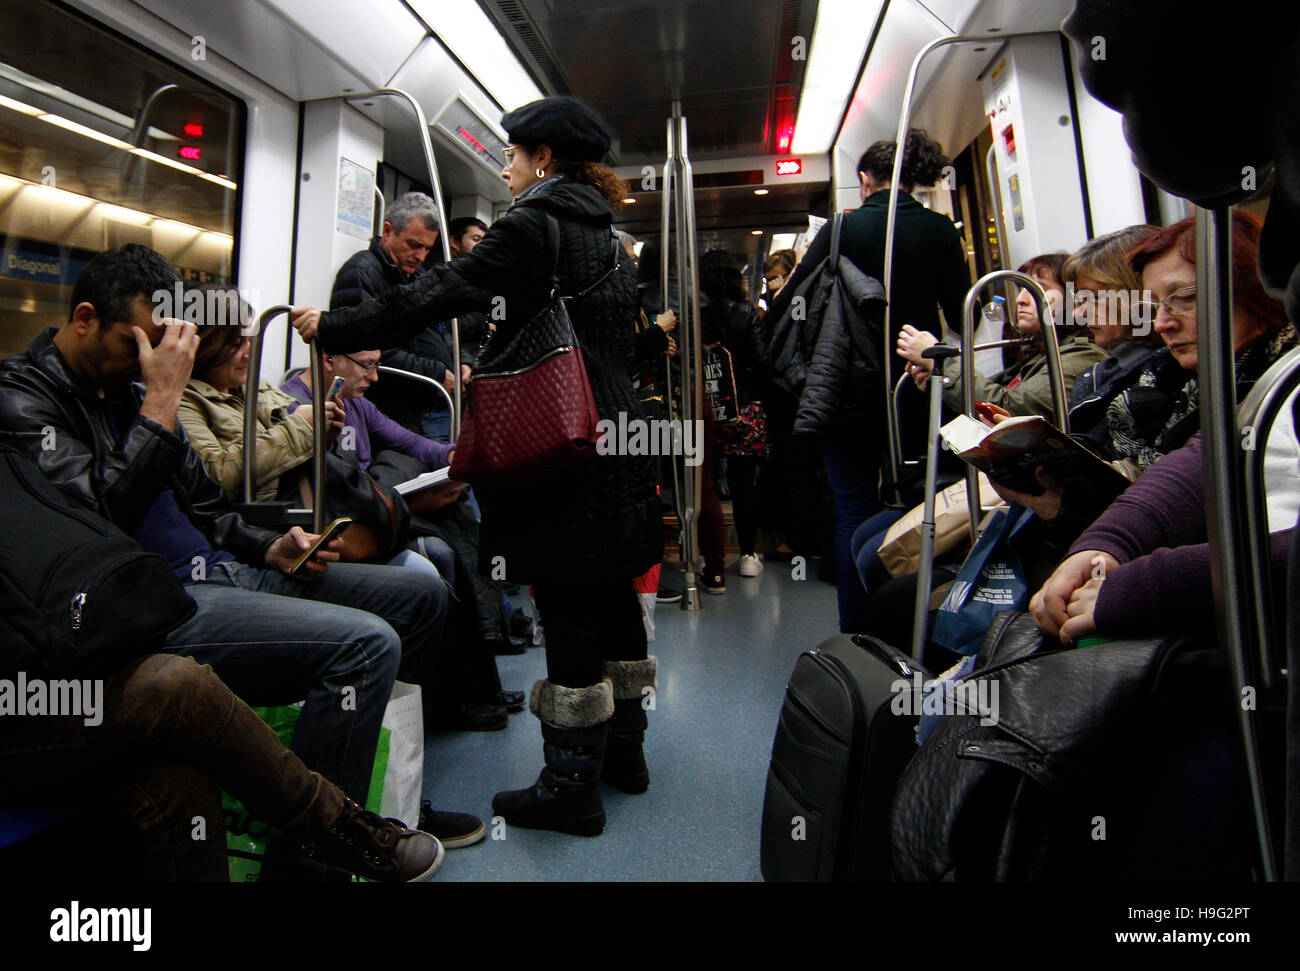 Les passagers sur un trajet de métro Banque D'Images